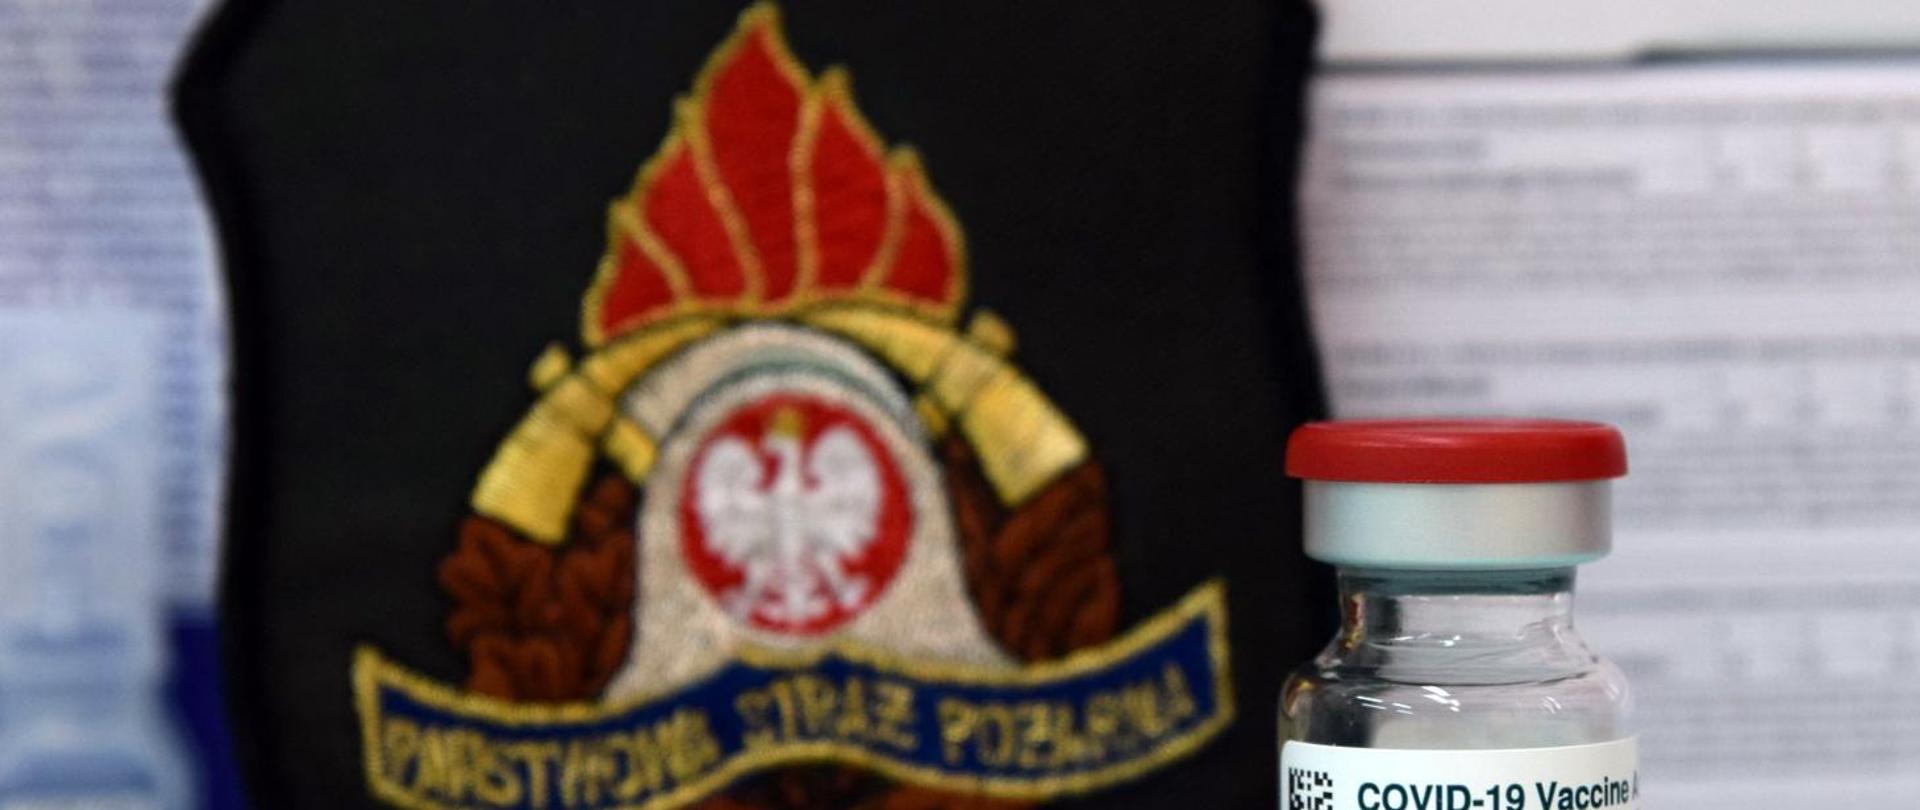 Na zdjęciu emblemat z logo Państwowej Straży Pożarnej a przed nim fiolka medyczna z napisem COVID-19 Vaccine